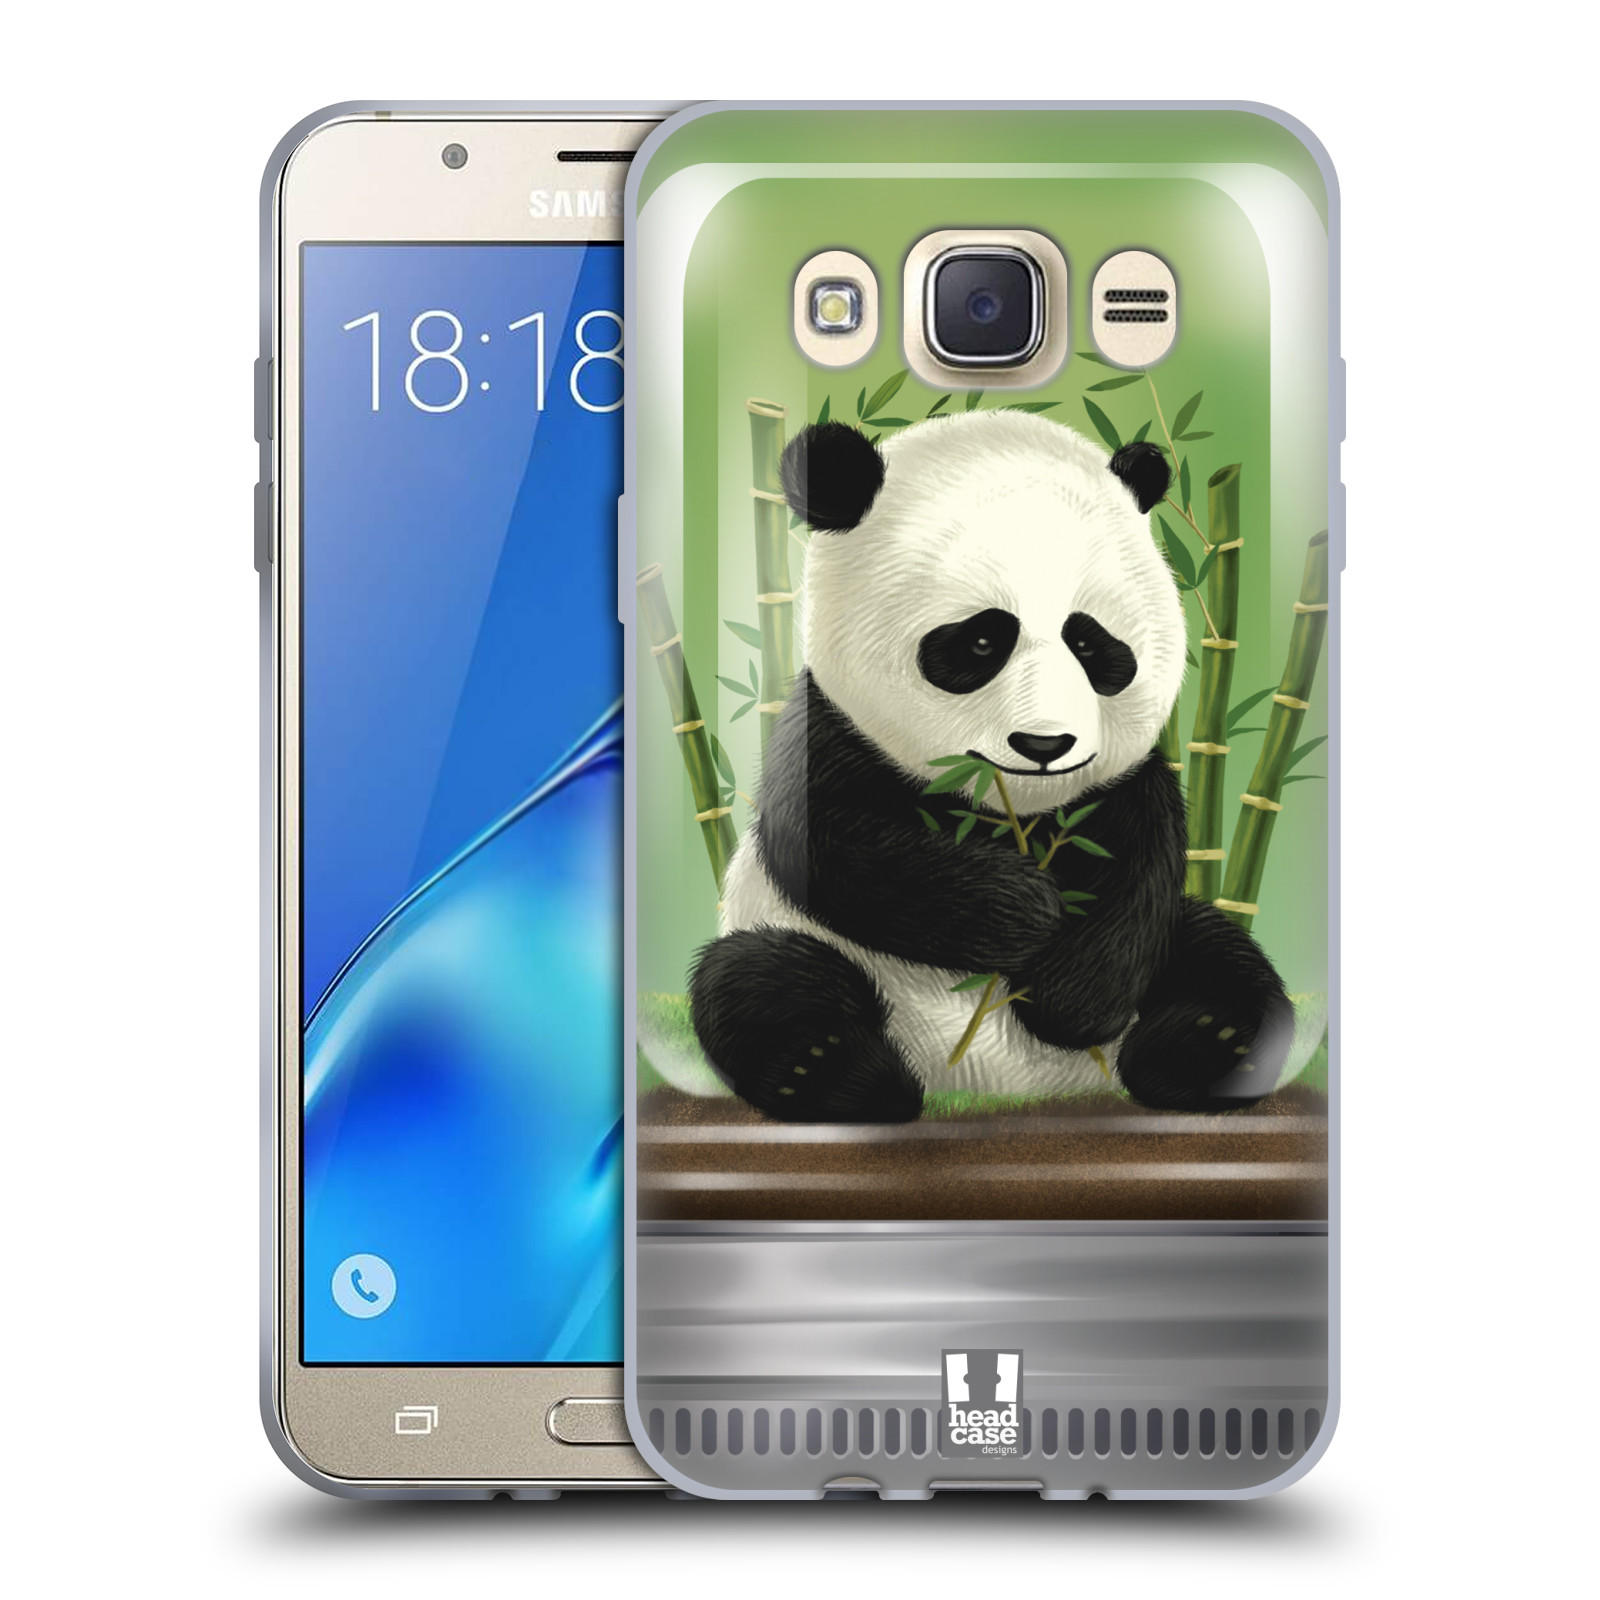 HEAD CASE silikonový obal, kryt na mobil Samsung Galaxy J7 2016 (J710, J710F) vzor Zvířátka v těžítku panda